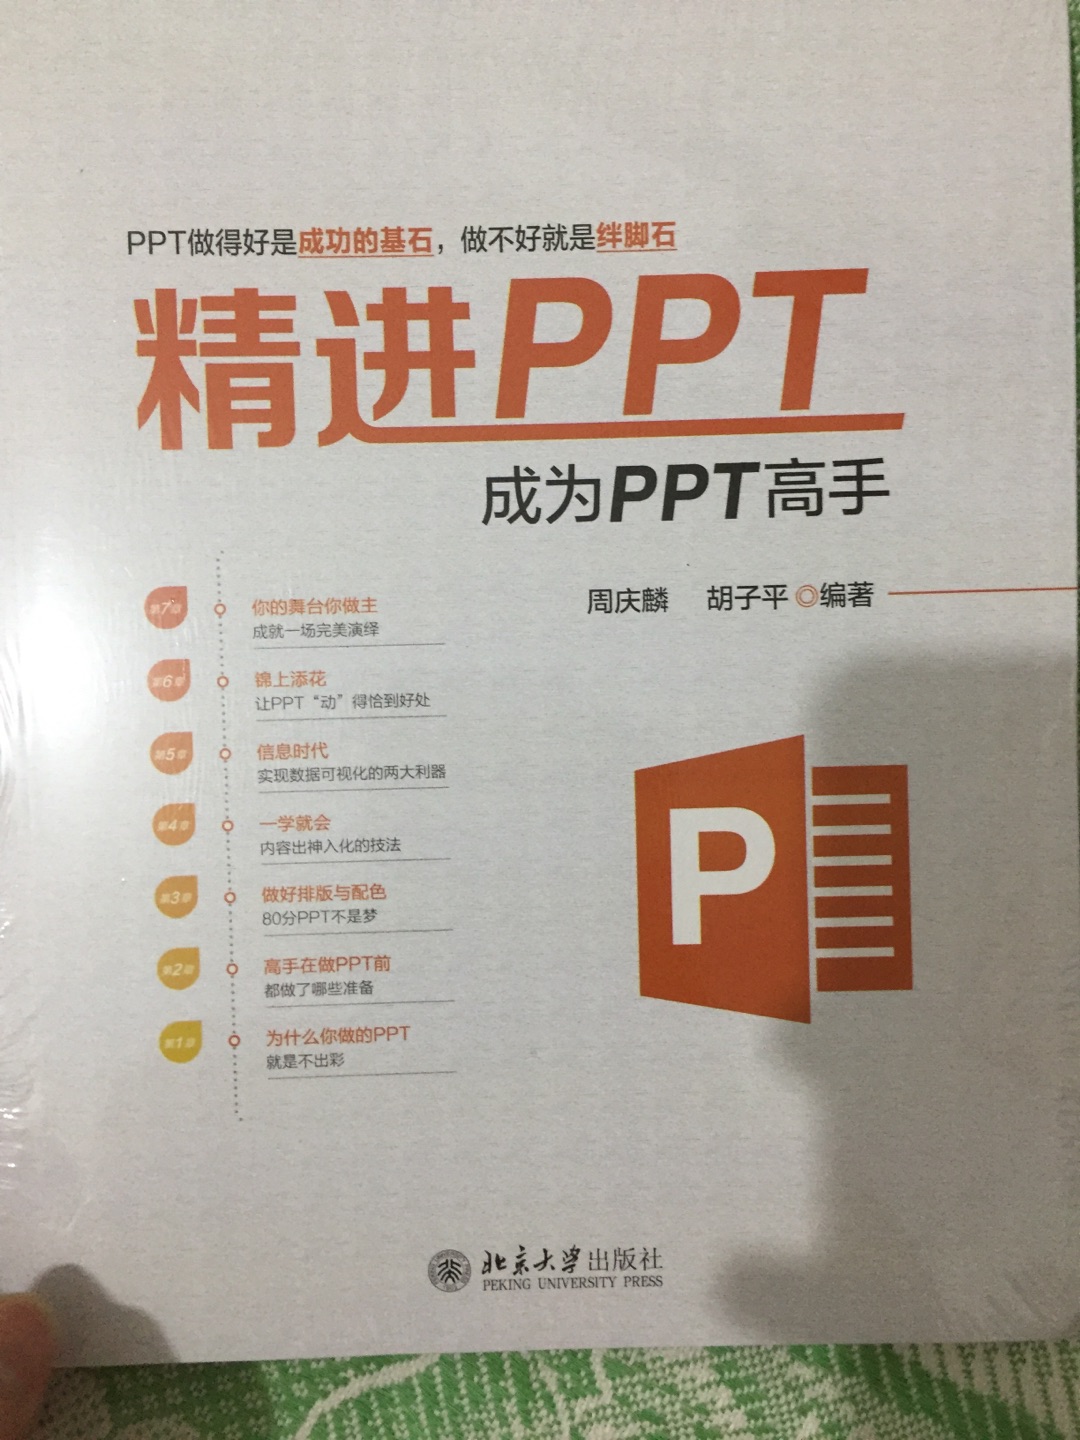 非常好的一本PPT工具书，实用又有收藏价值！物流包裹完好，发货快，到货准时无误，赞一个！